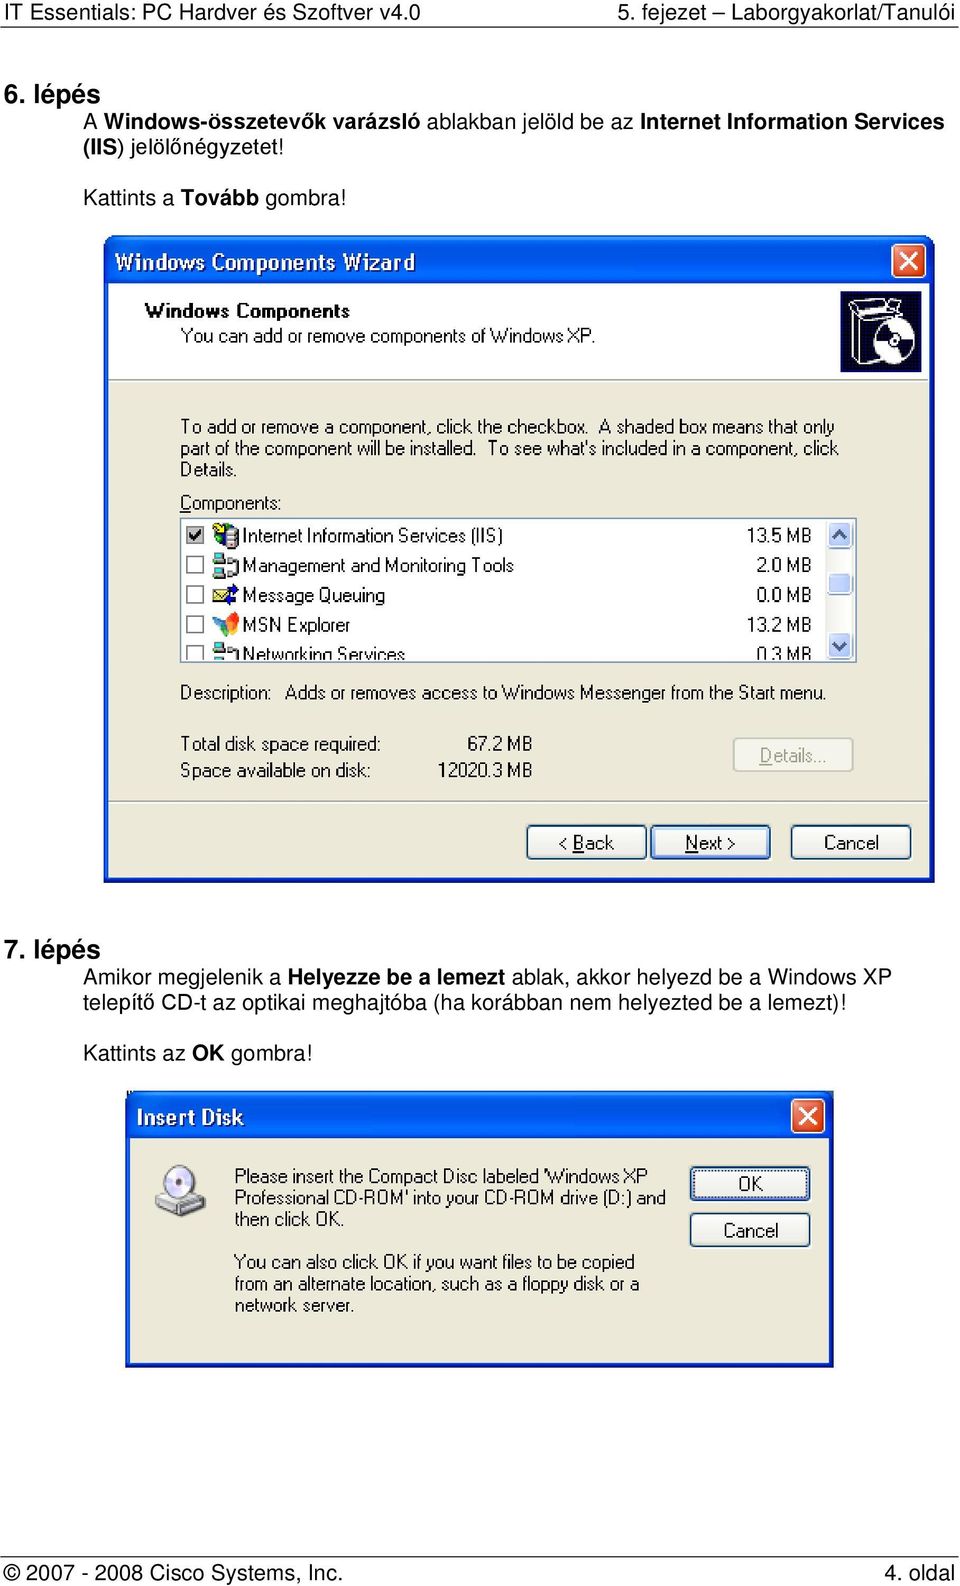 lépés Amikor megjelenik a Helyezze be a lemezt ablak, akkor helyezd be a Windows XP